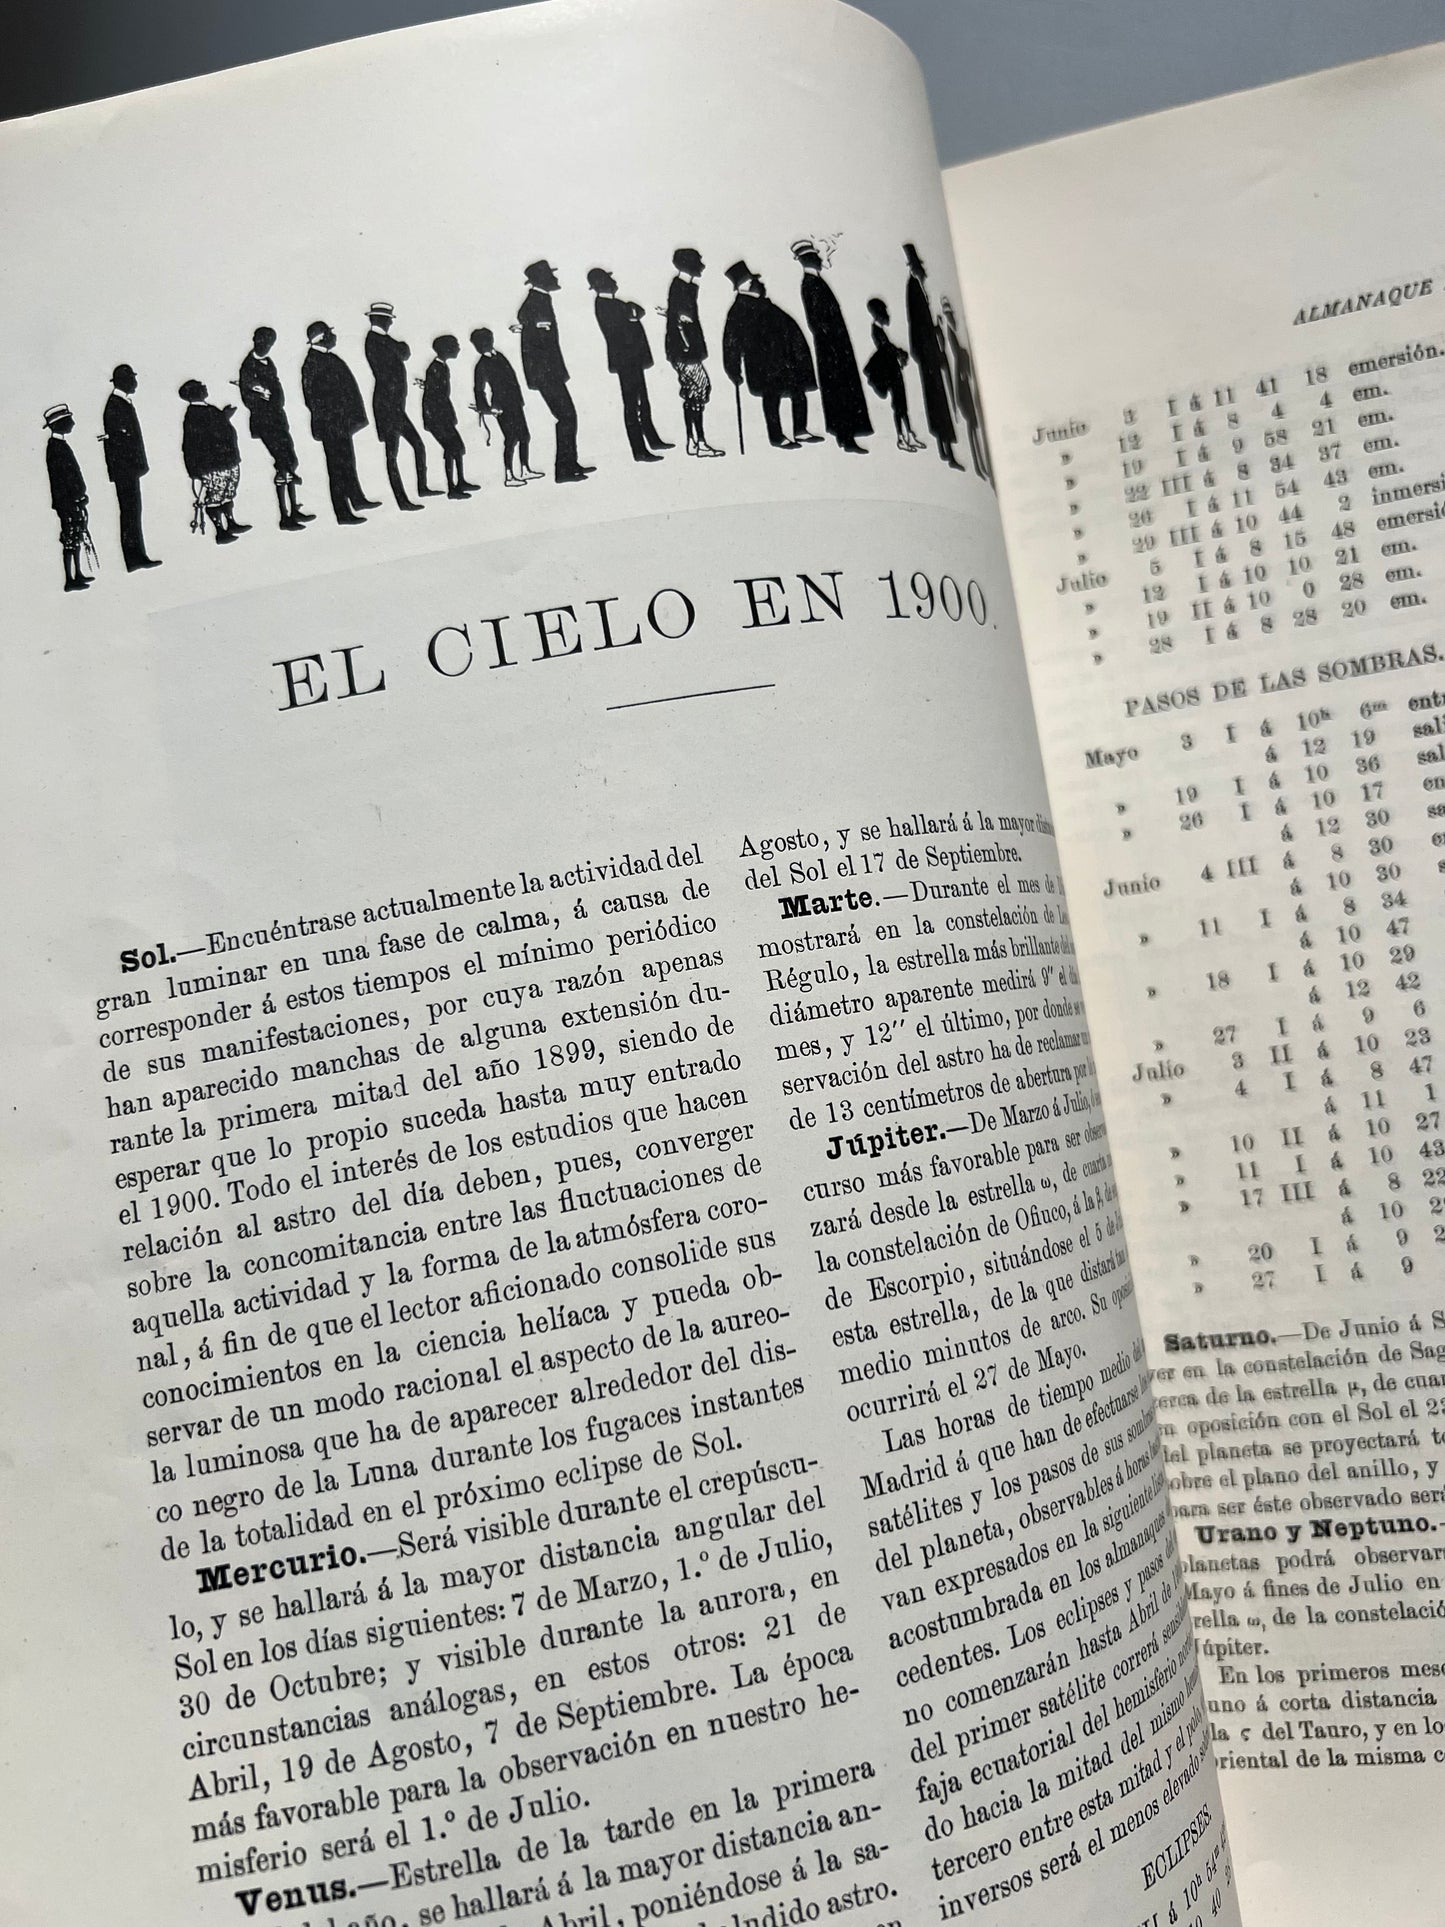 Almanaque para 1900 de La Ilustración Española y Americana (portada de Ramón Casas) - Madrid, 1899